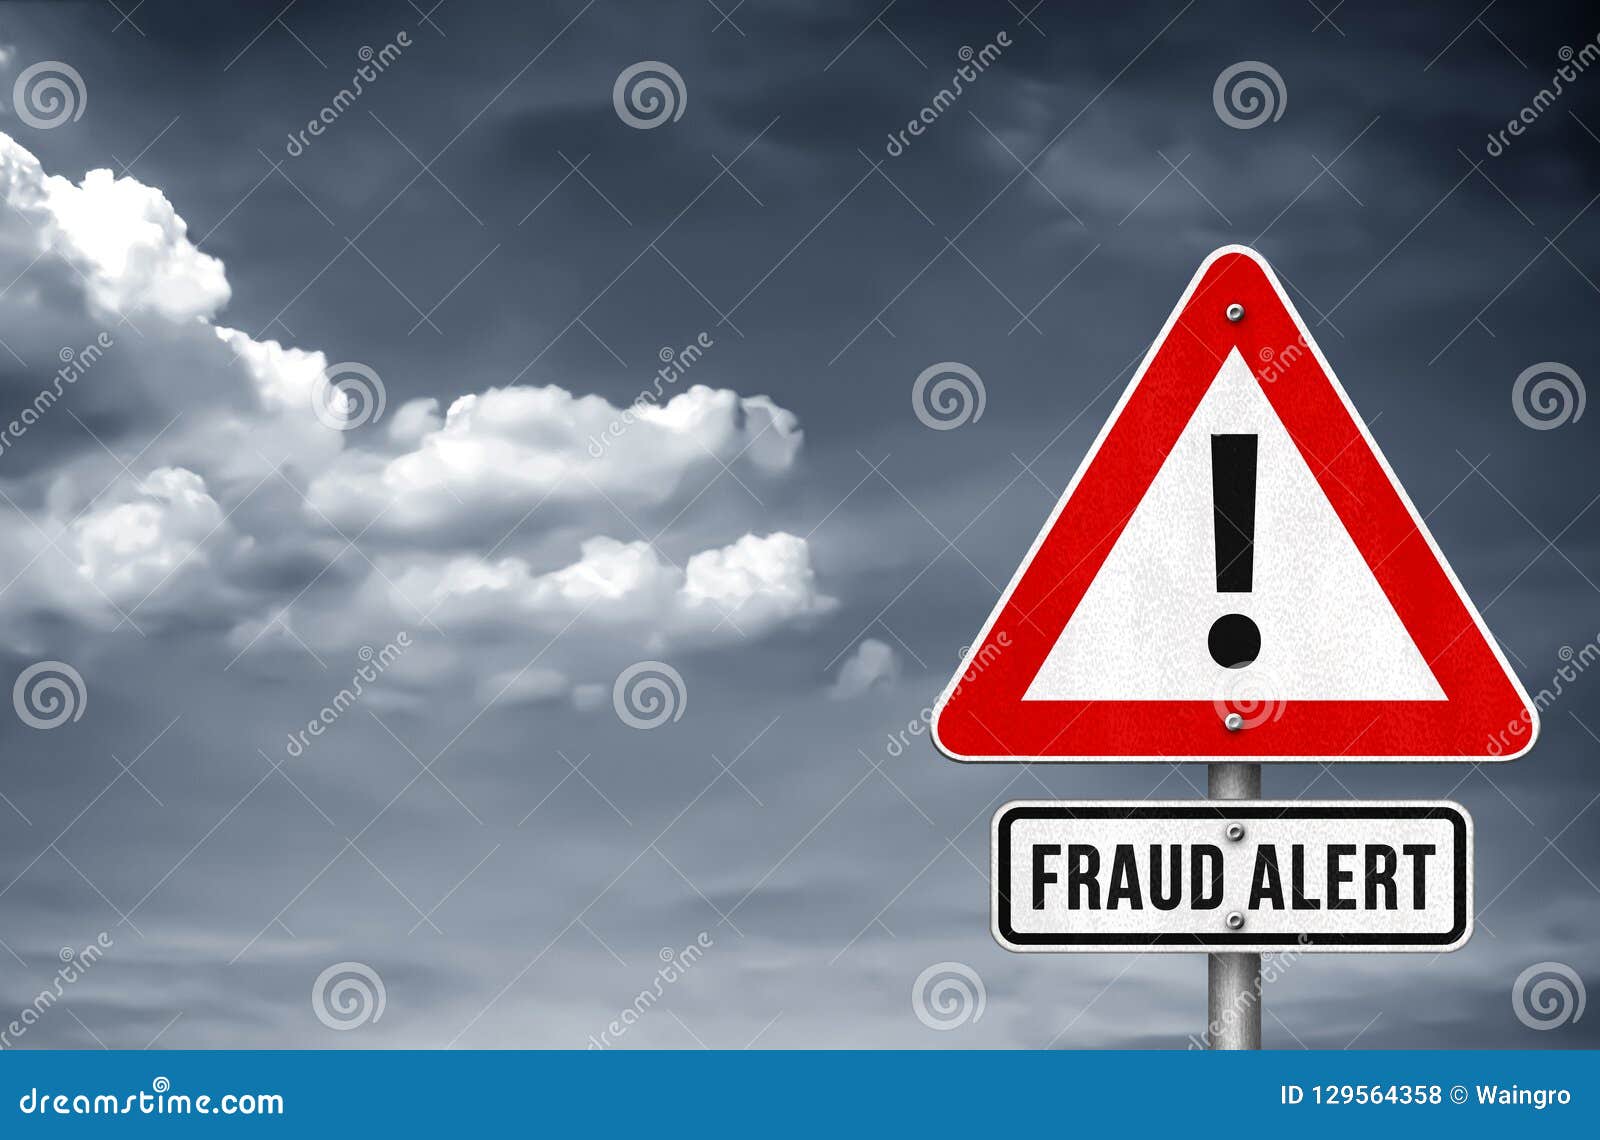 fraud alert warning sign